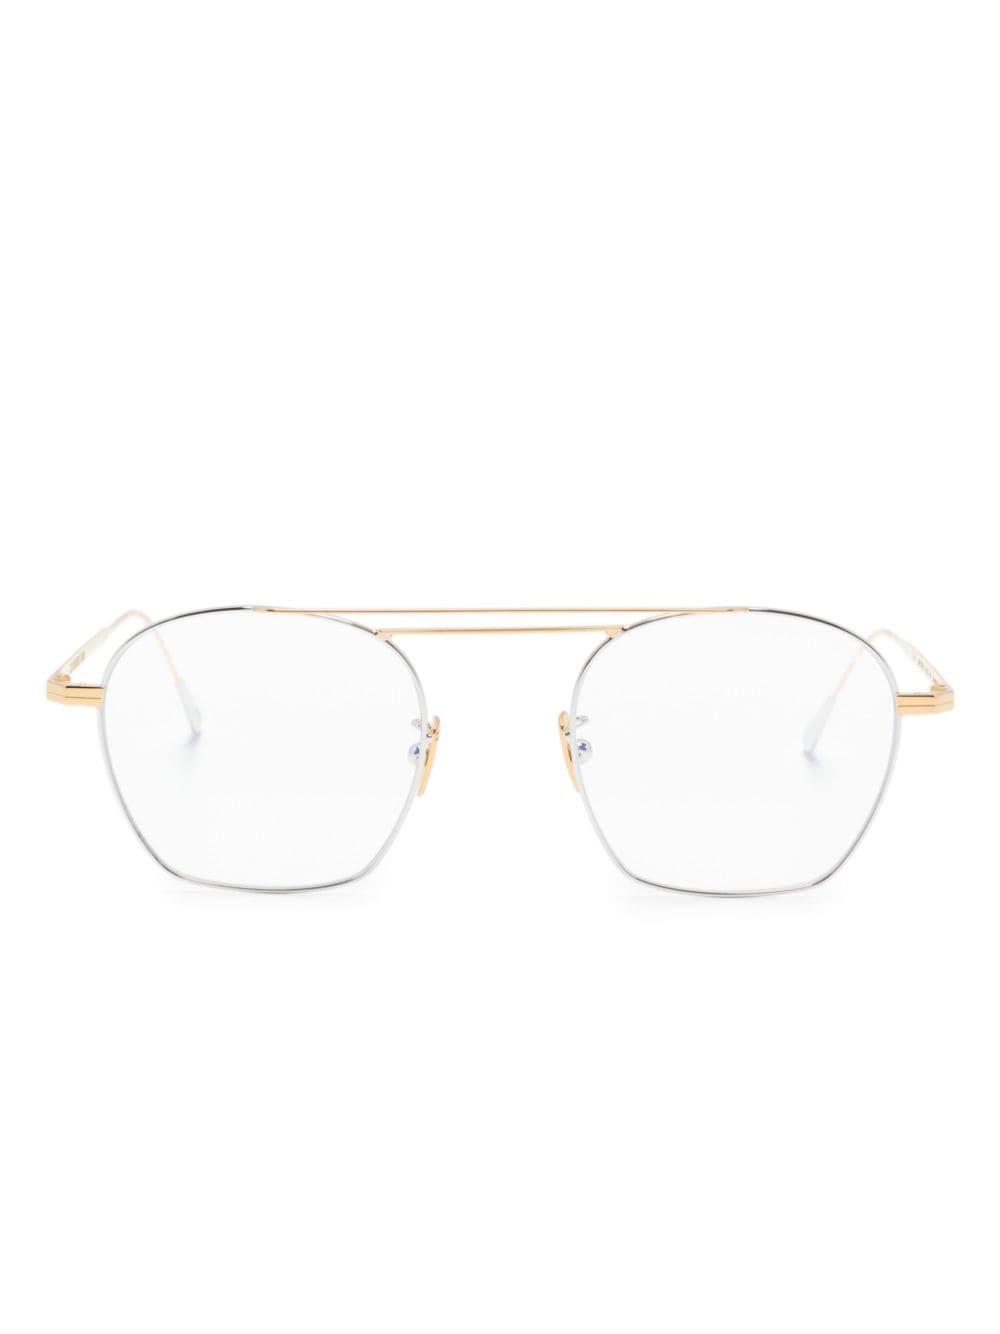 Cutler & Gross 0004 pilot-frame glasses - Gold von Cutler & Gross